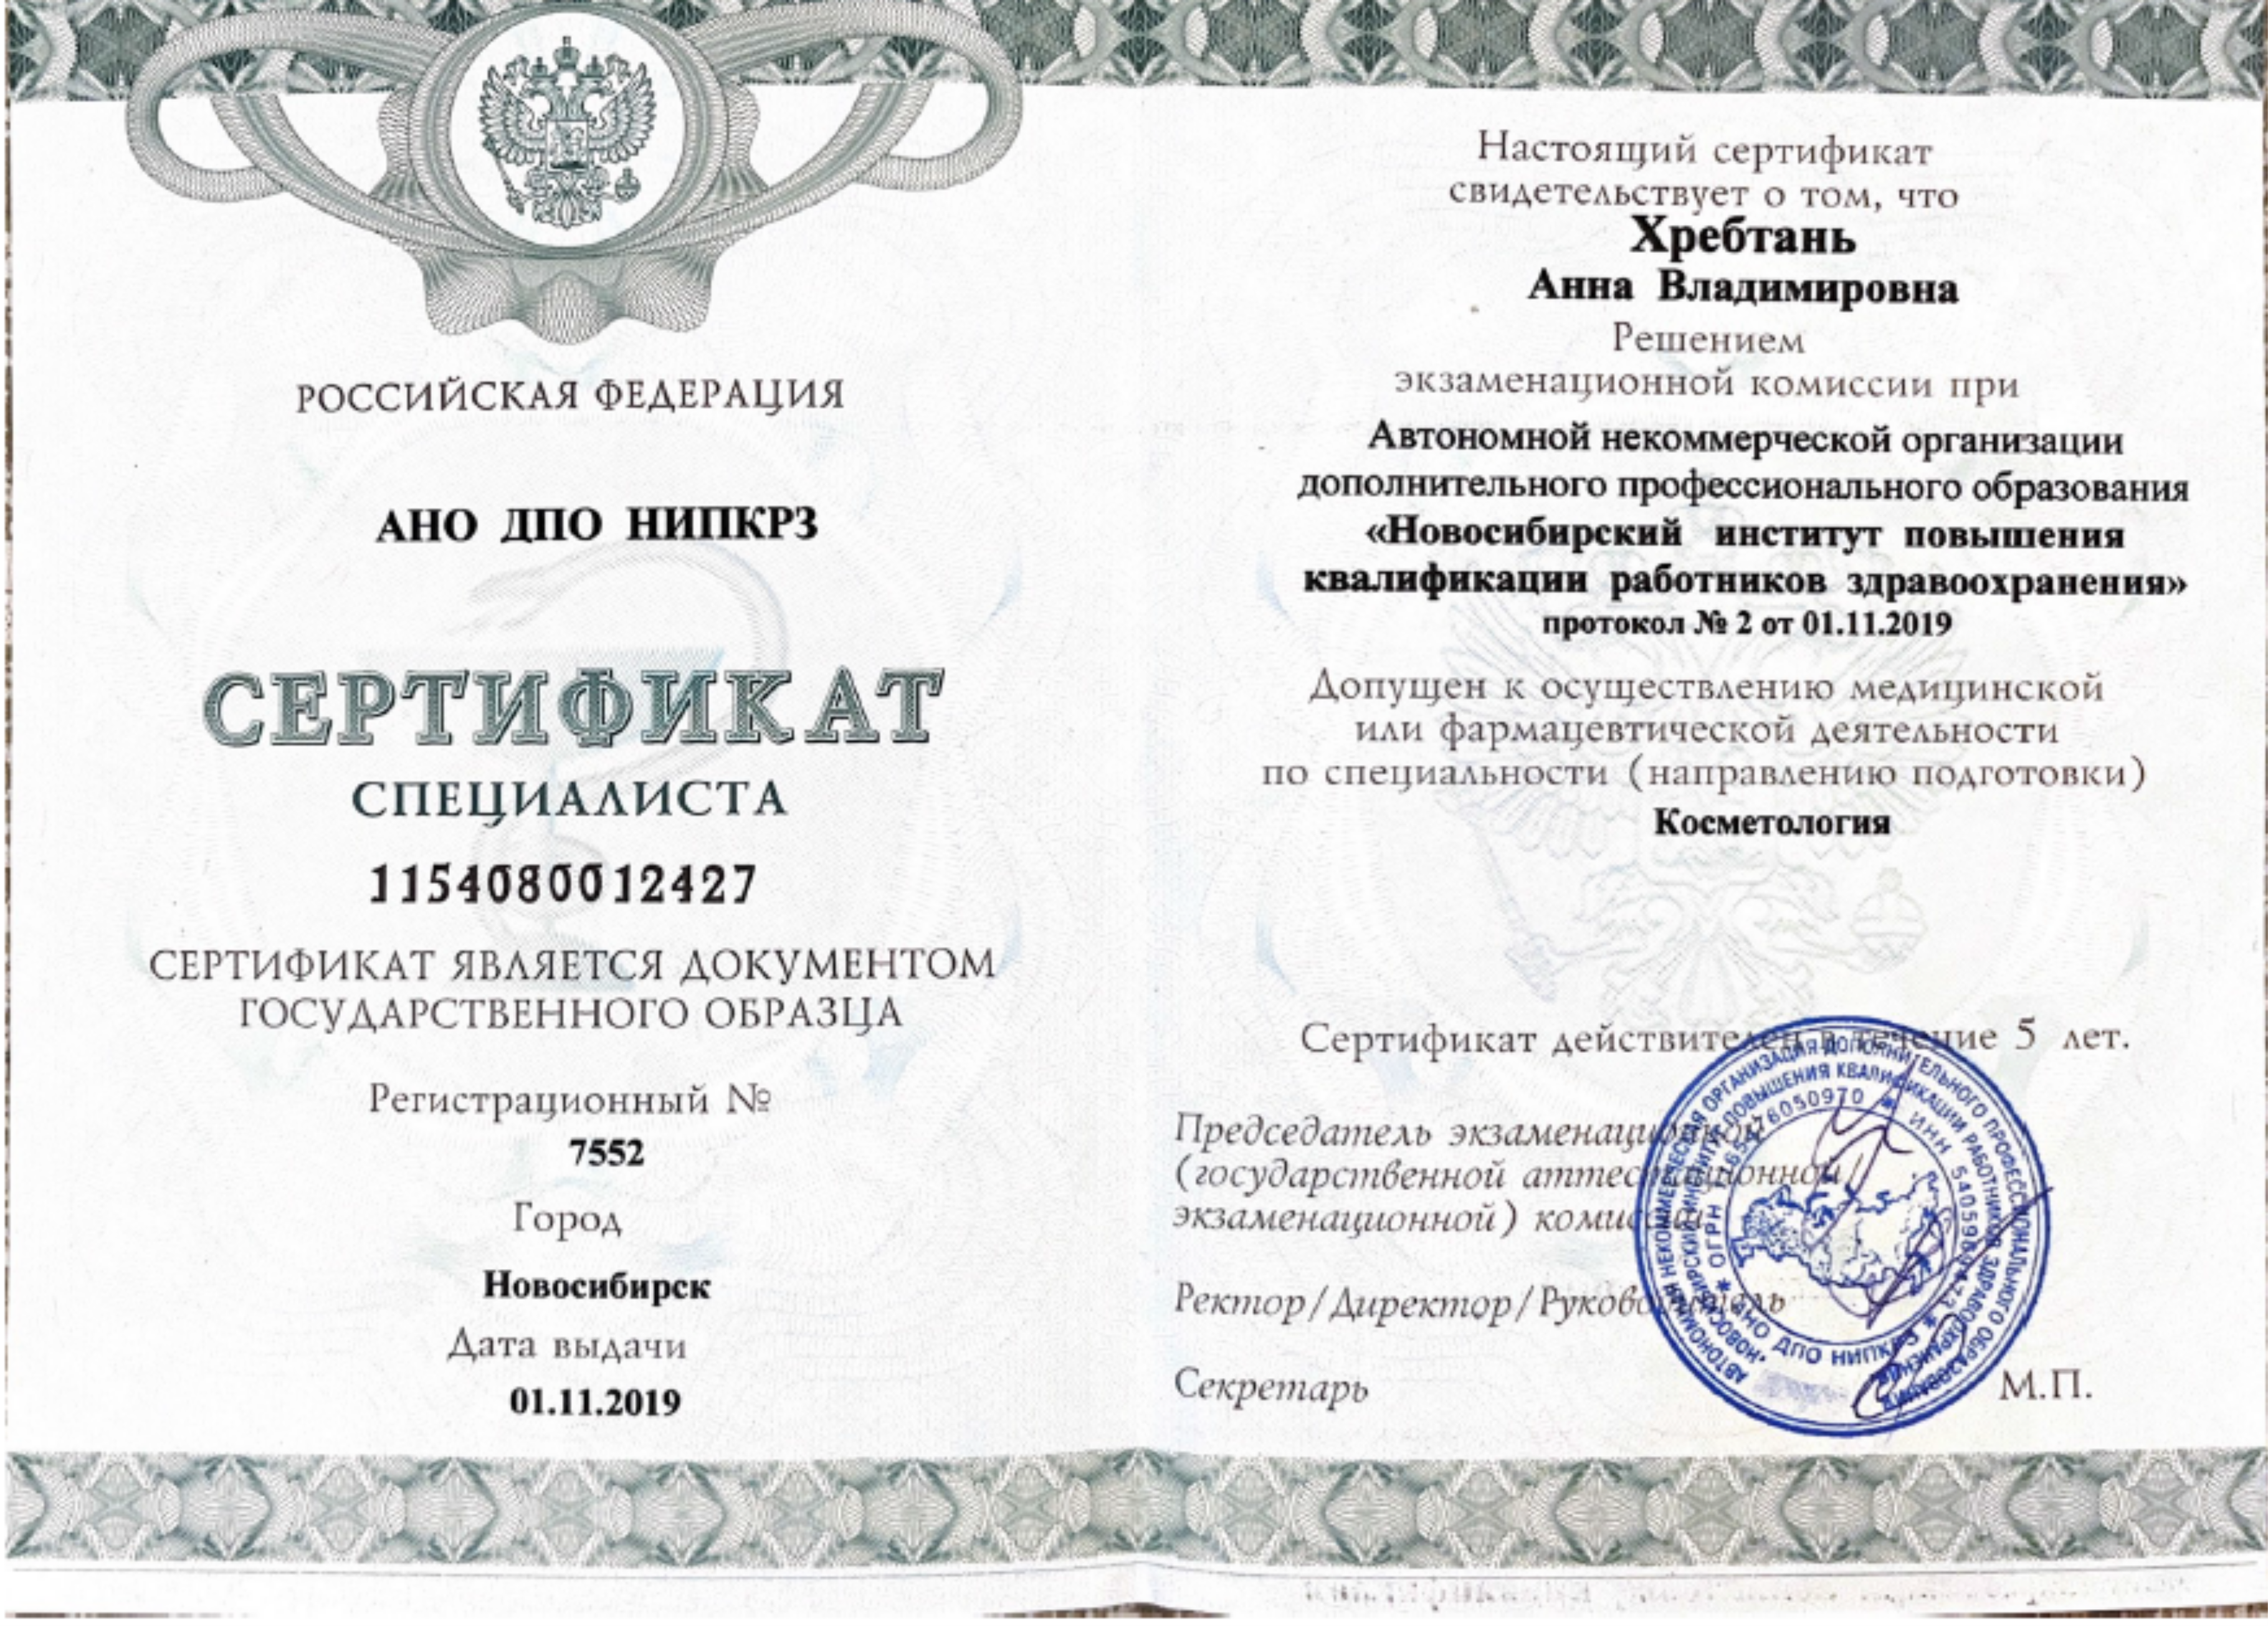 Сертификат специалиста "Косметология". 2019 г.